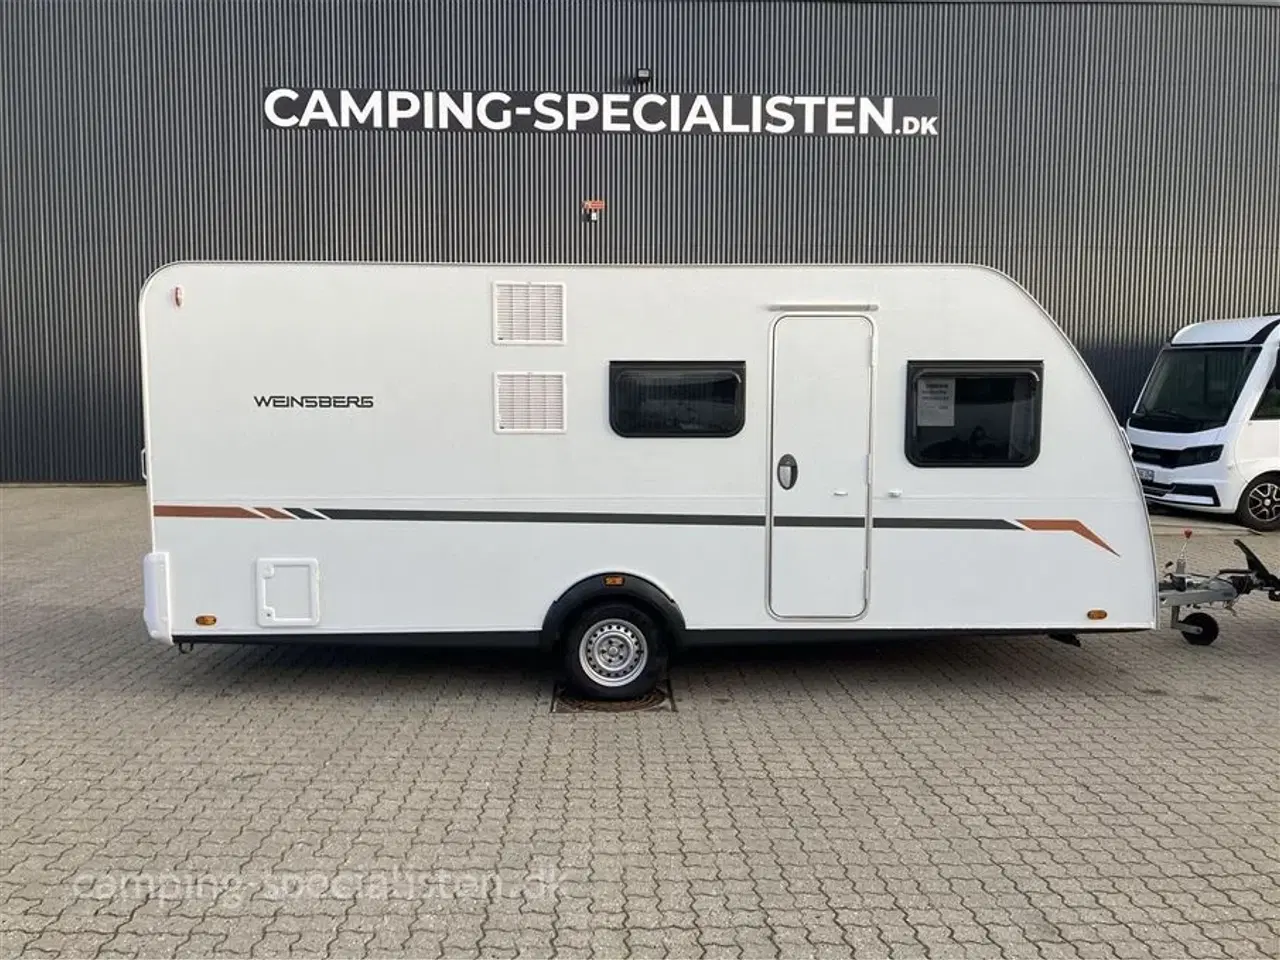 Billede 1 - 2022 - Weinsberg CaraCito 500 QDK   Så god som ny - køjevogn - Weinsberg Caracito 500 QDK 2022 - Kan nu opleves hos Camping-Specialisten.dk